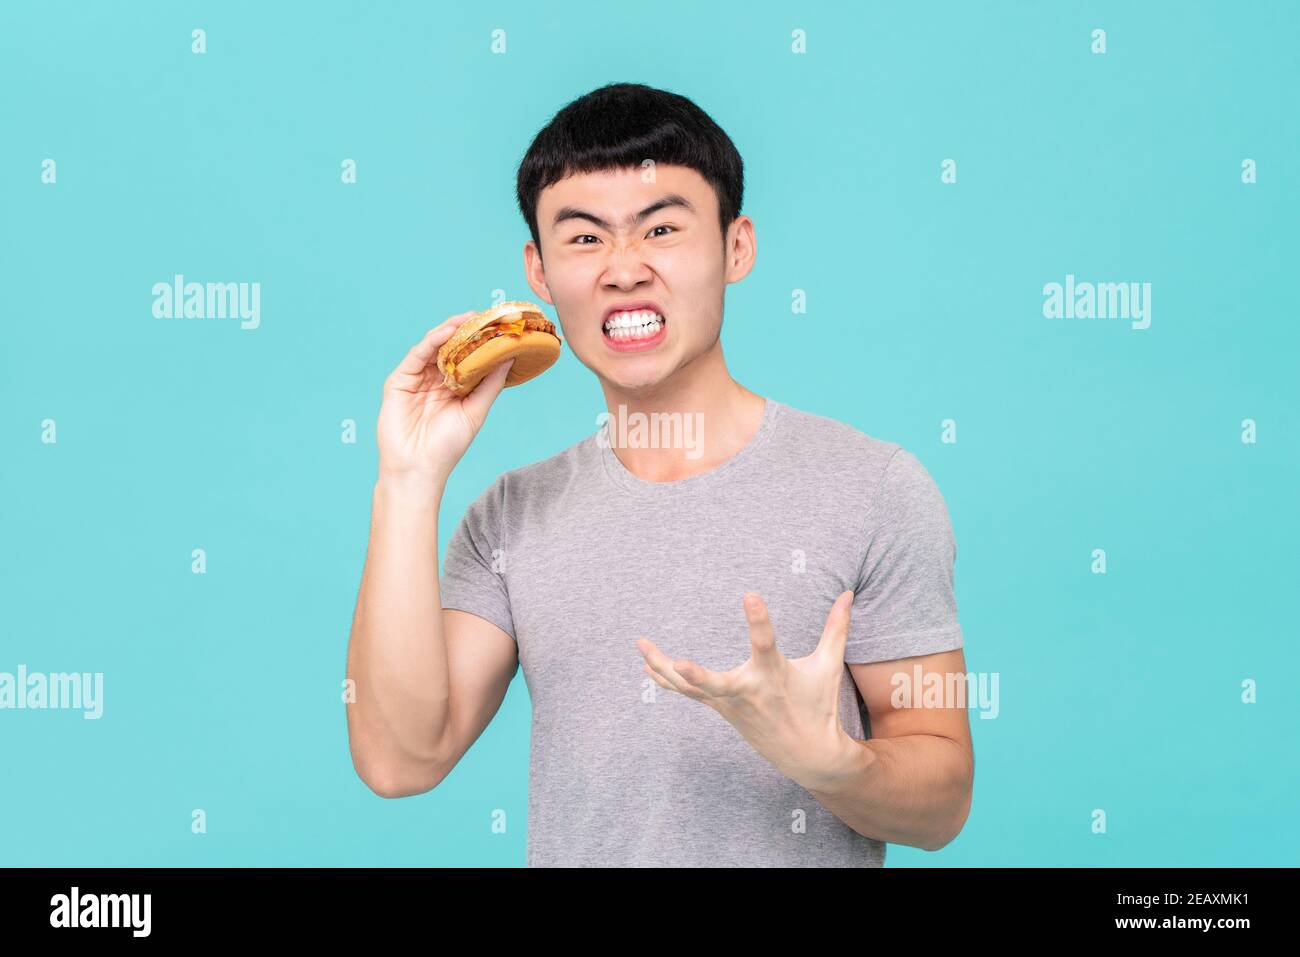 Diät hungrigen asiatischen Mann mit lustigen Gesichtsausdruck beim Halten hamburger in der Hand isoliert auf hellblauem Hintergrund Stockfoto